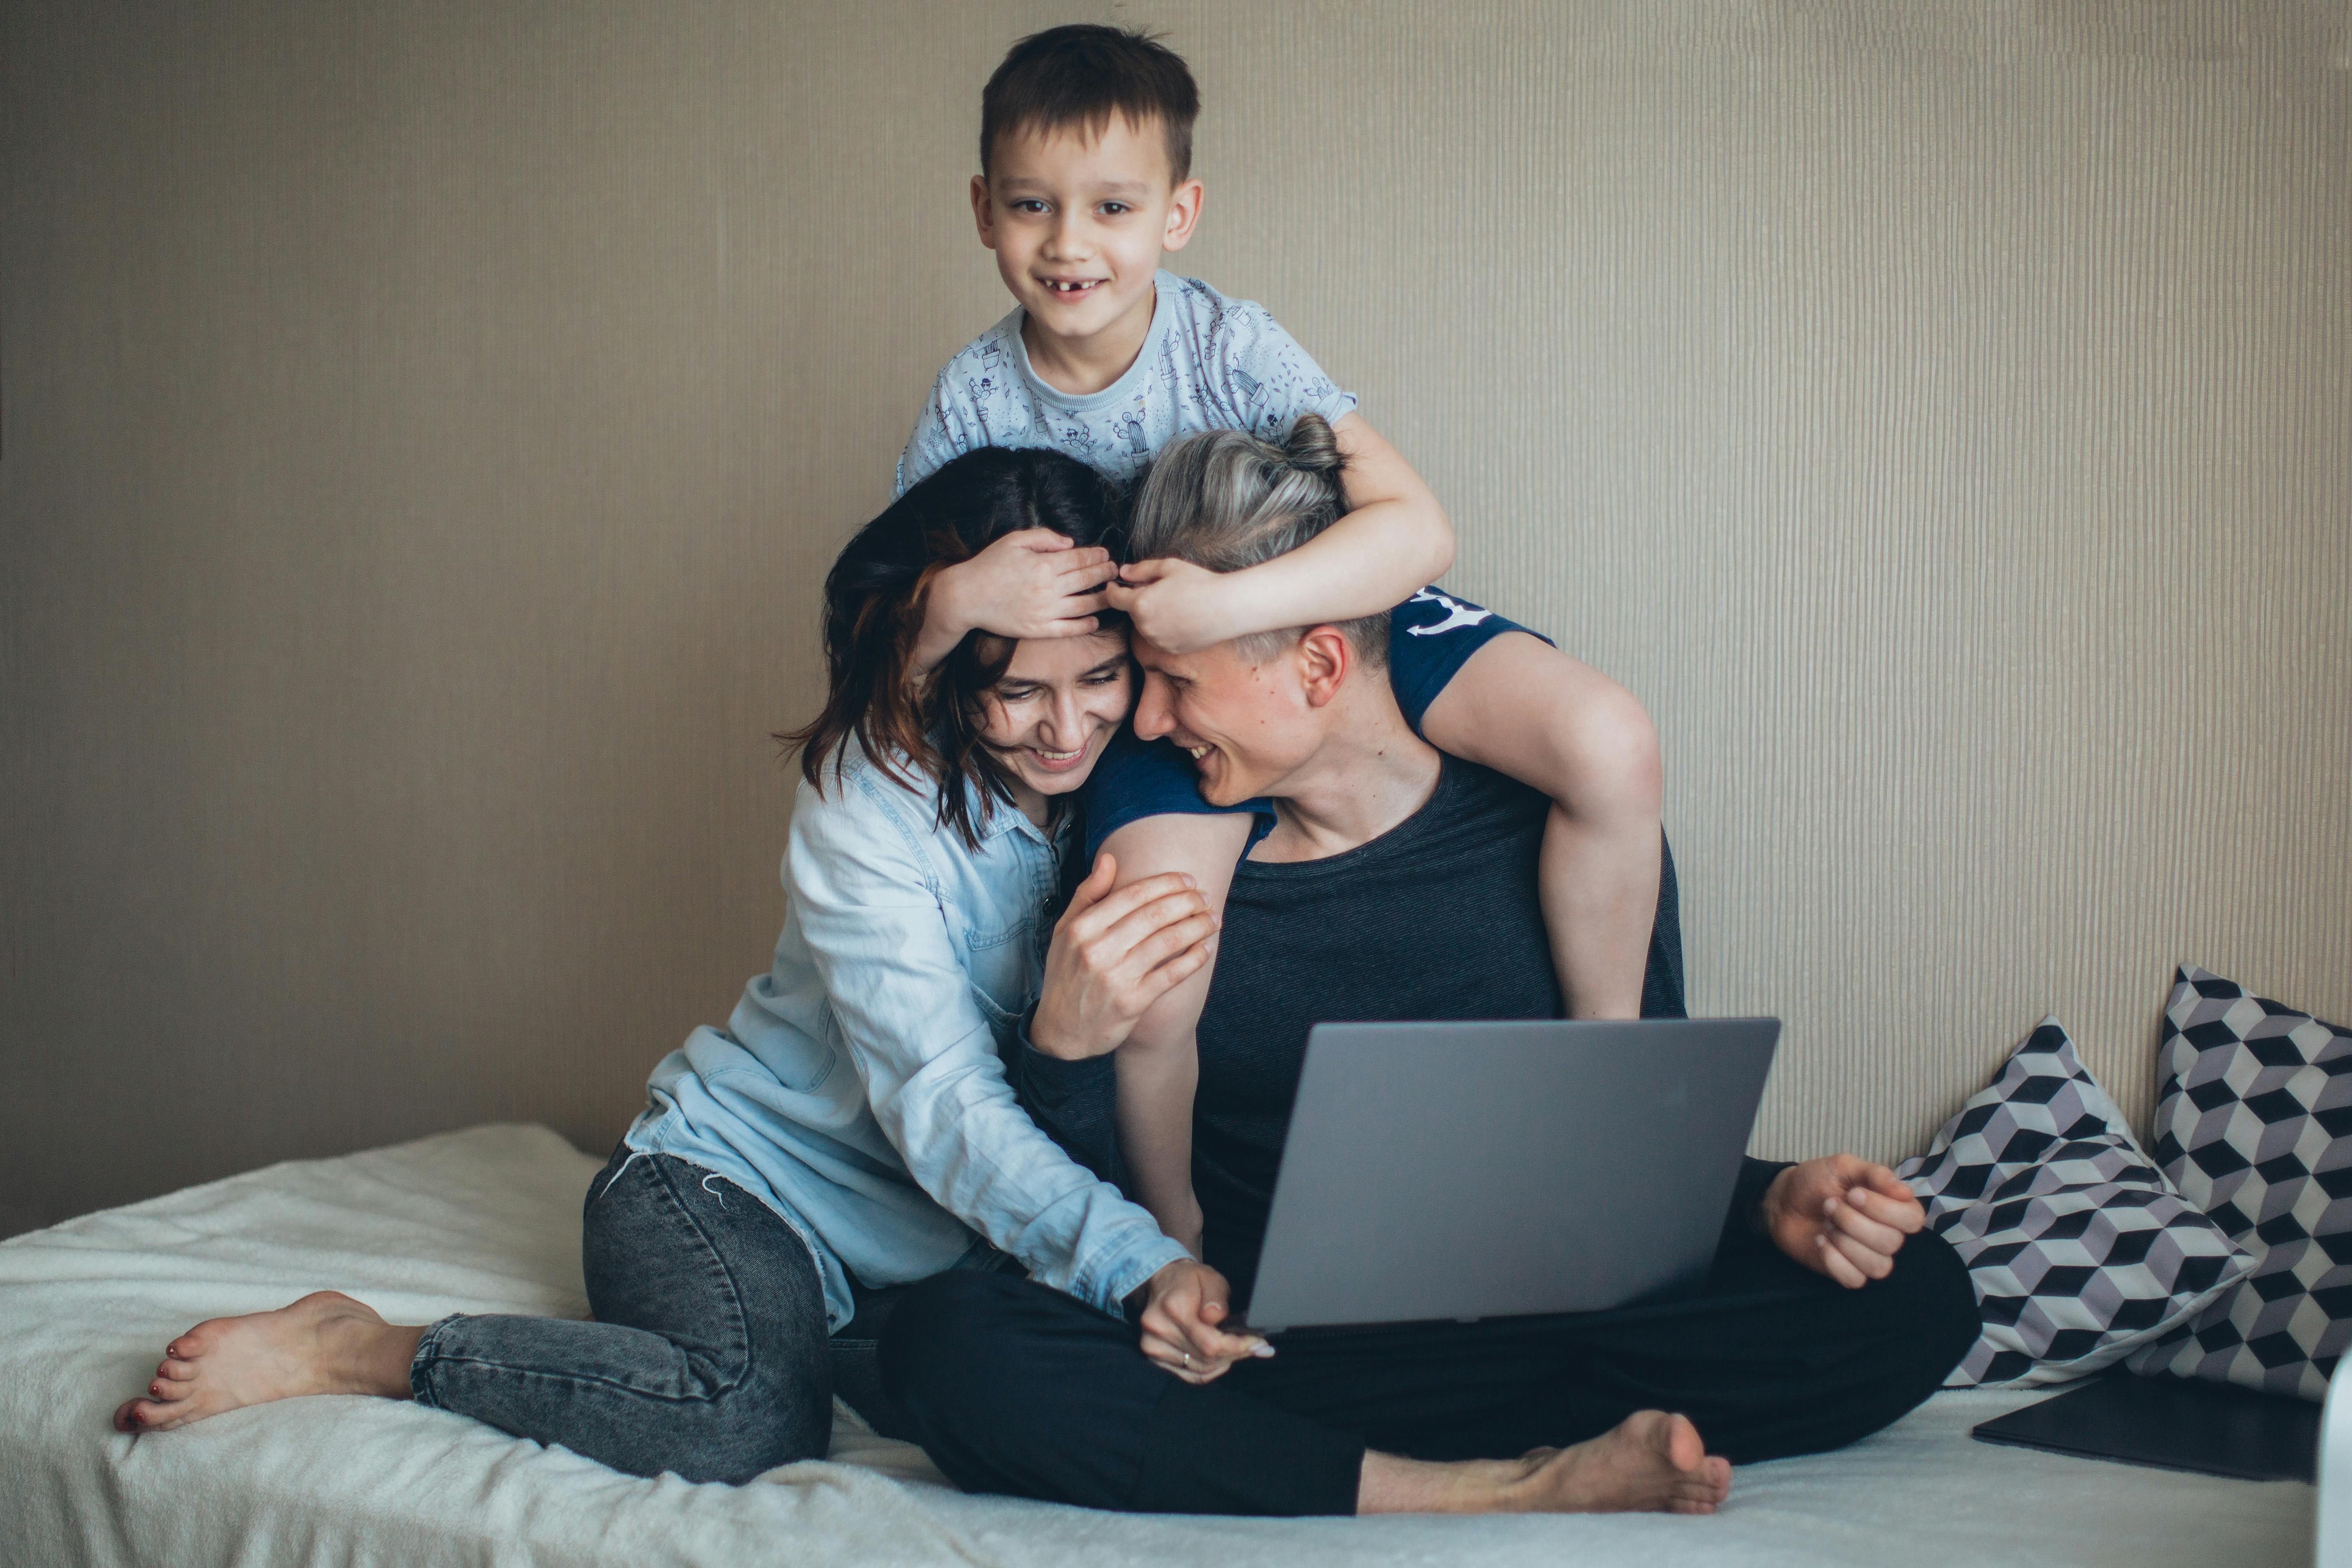 A boy embracing his parents | Source: Pexels